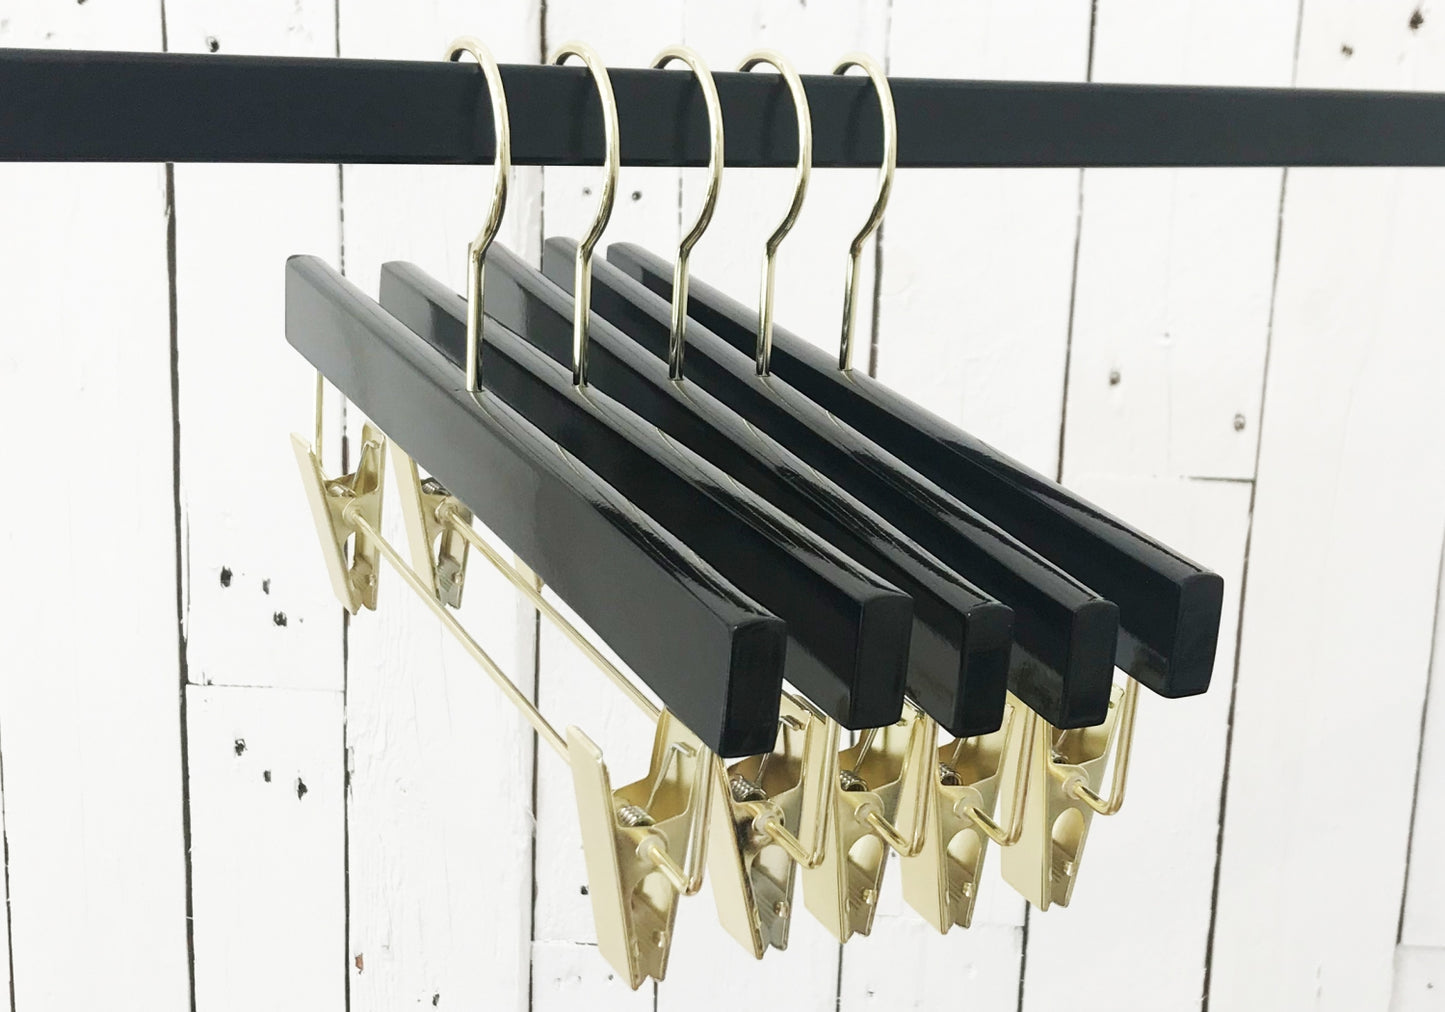 Black Wooden Clip Bottom Premium Hanger 35cm